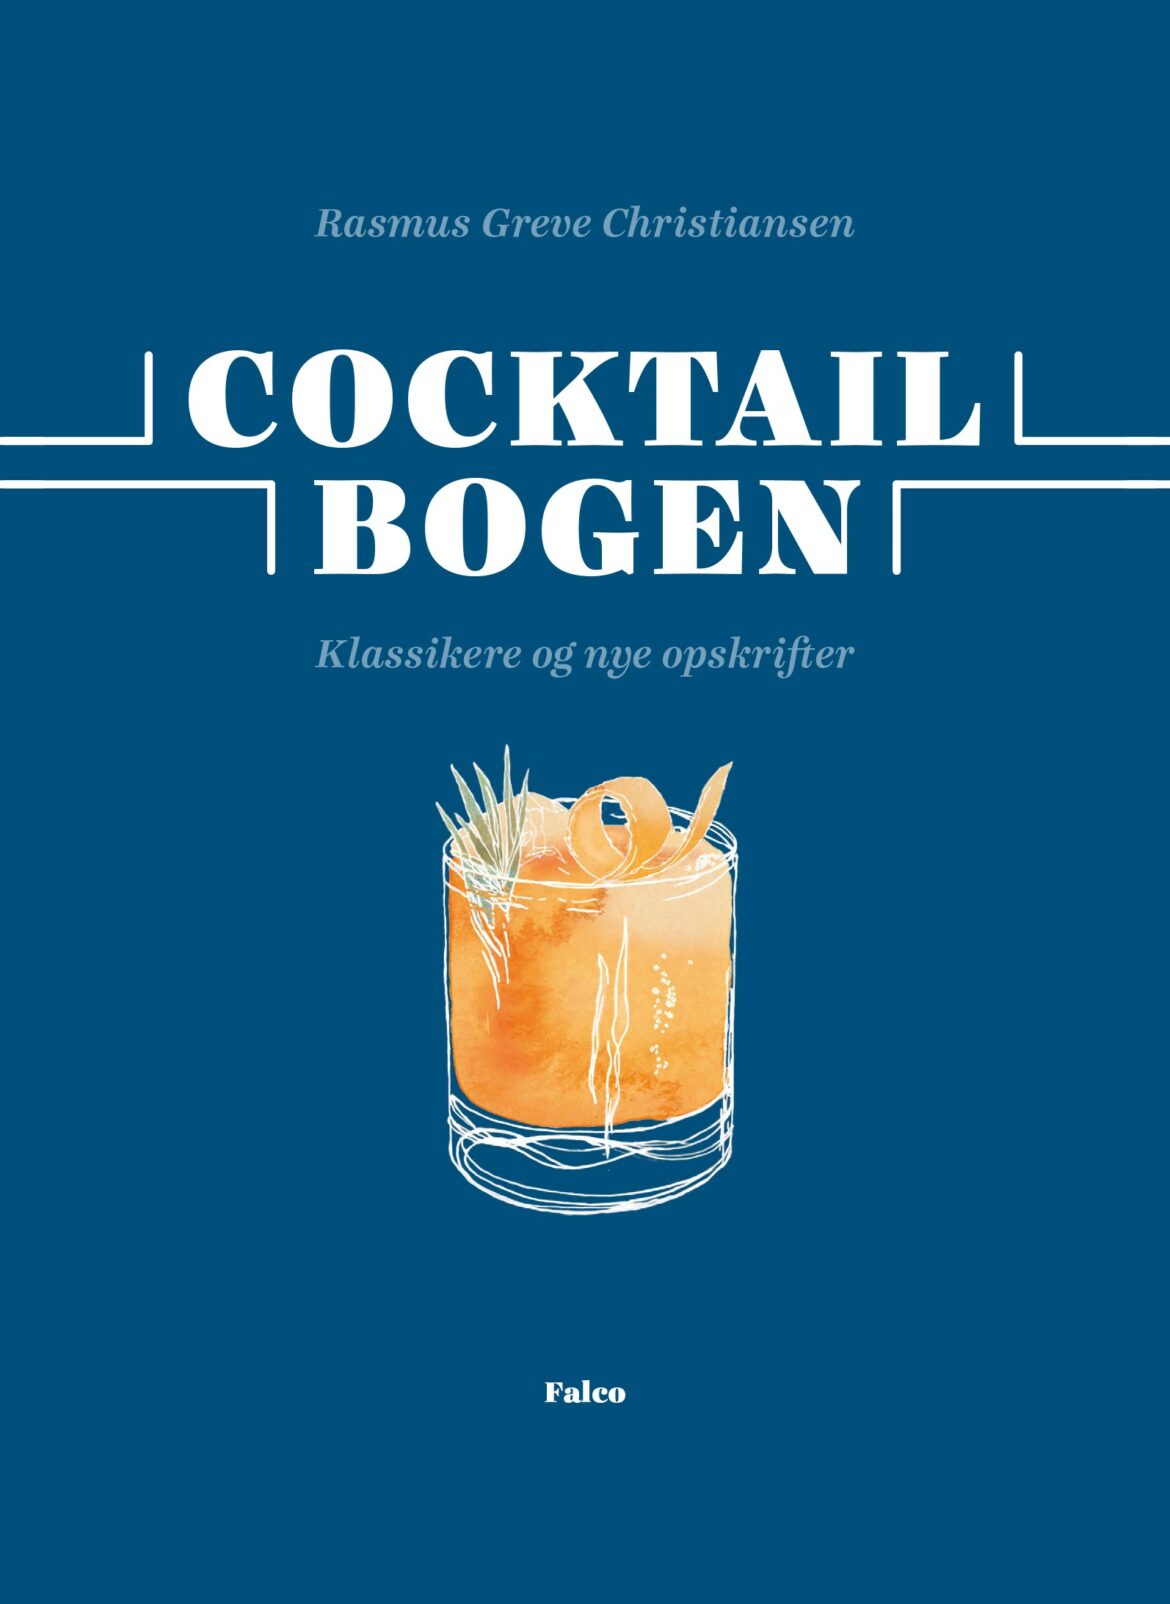 Barchef deler hemmeligheder om cocktails i ny bog